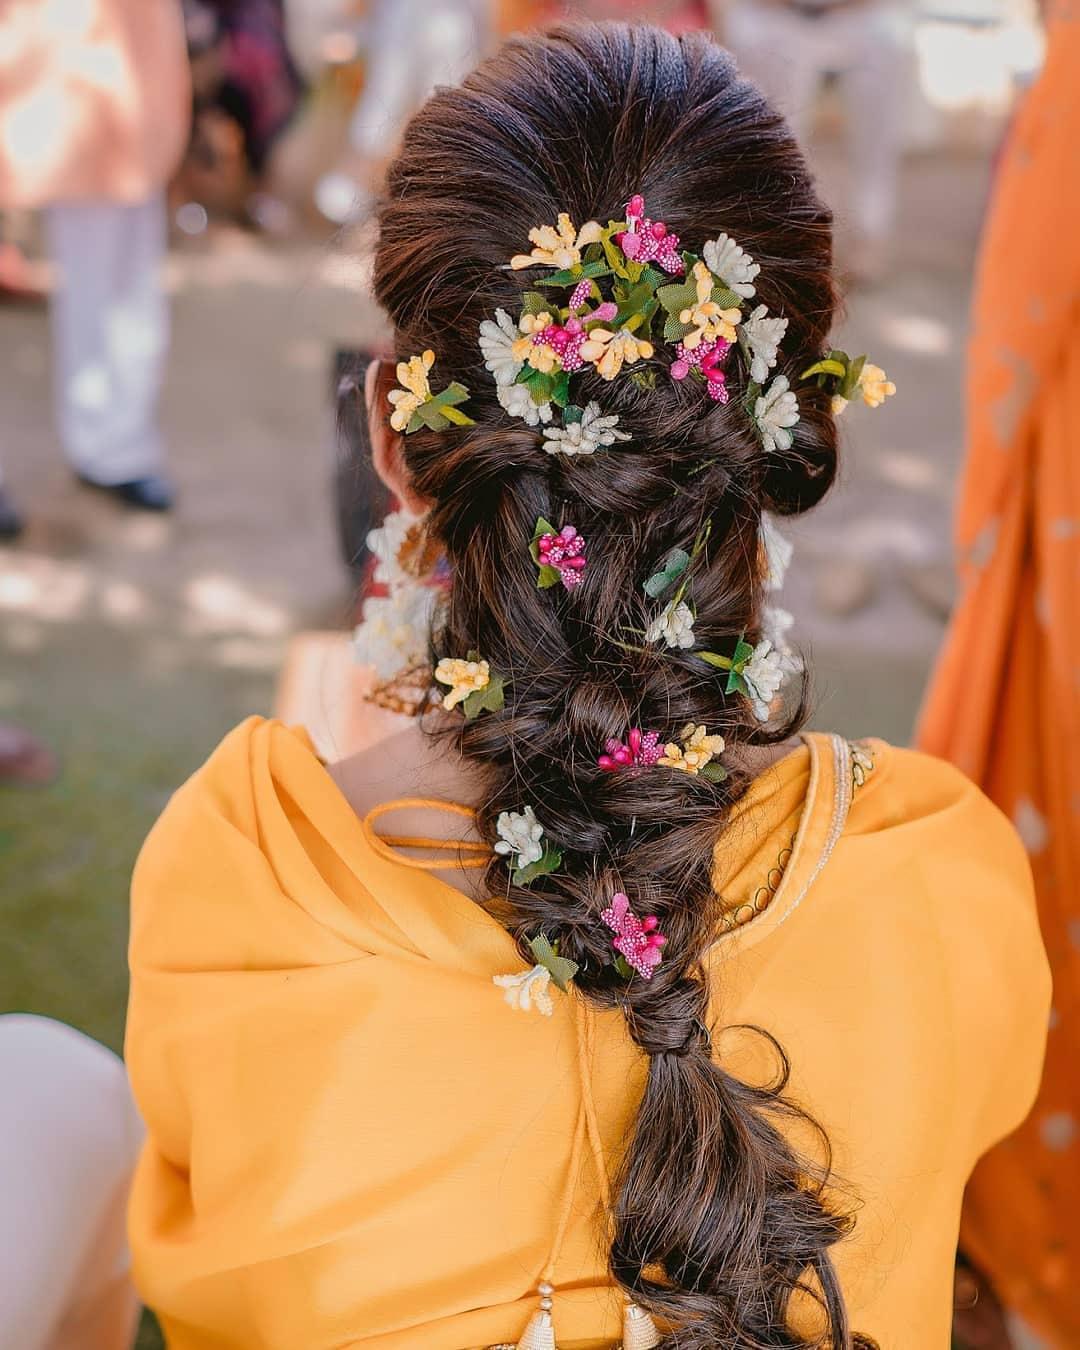 40 Ways To Wear Wedding Flower Crowns & Hair Accessories